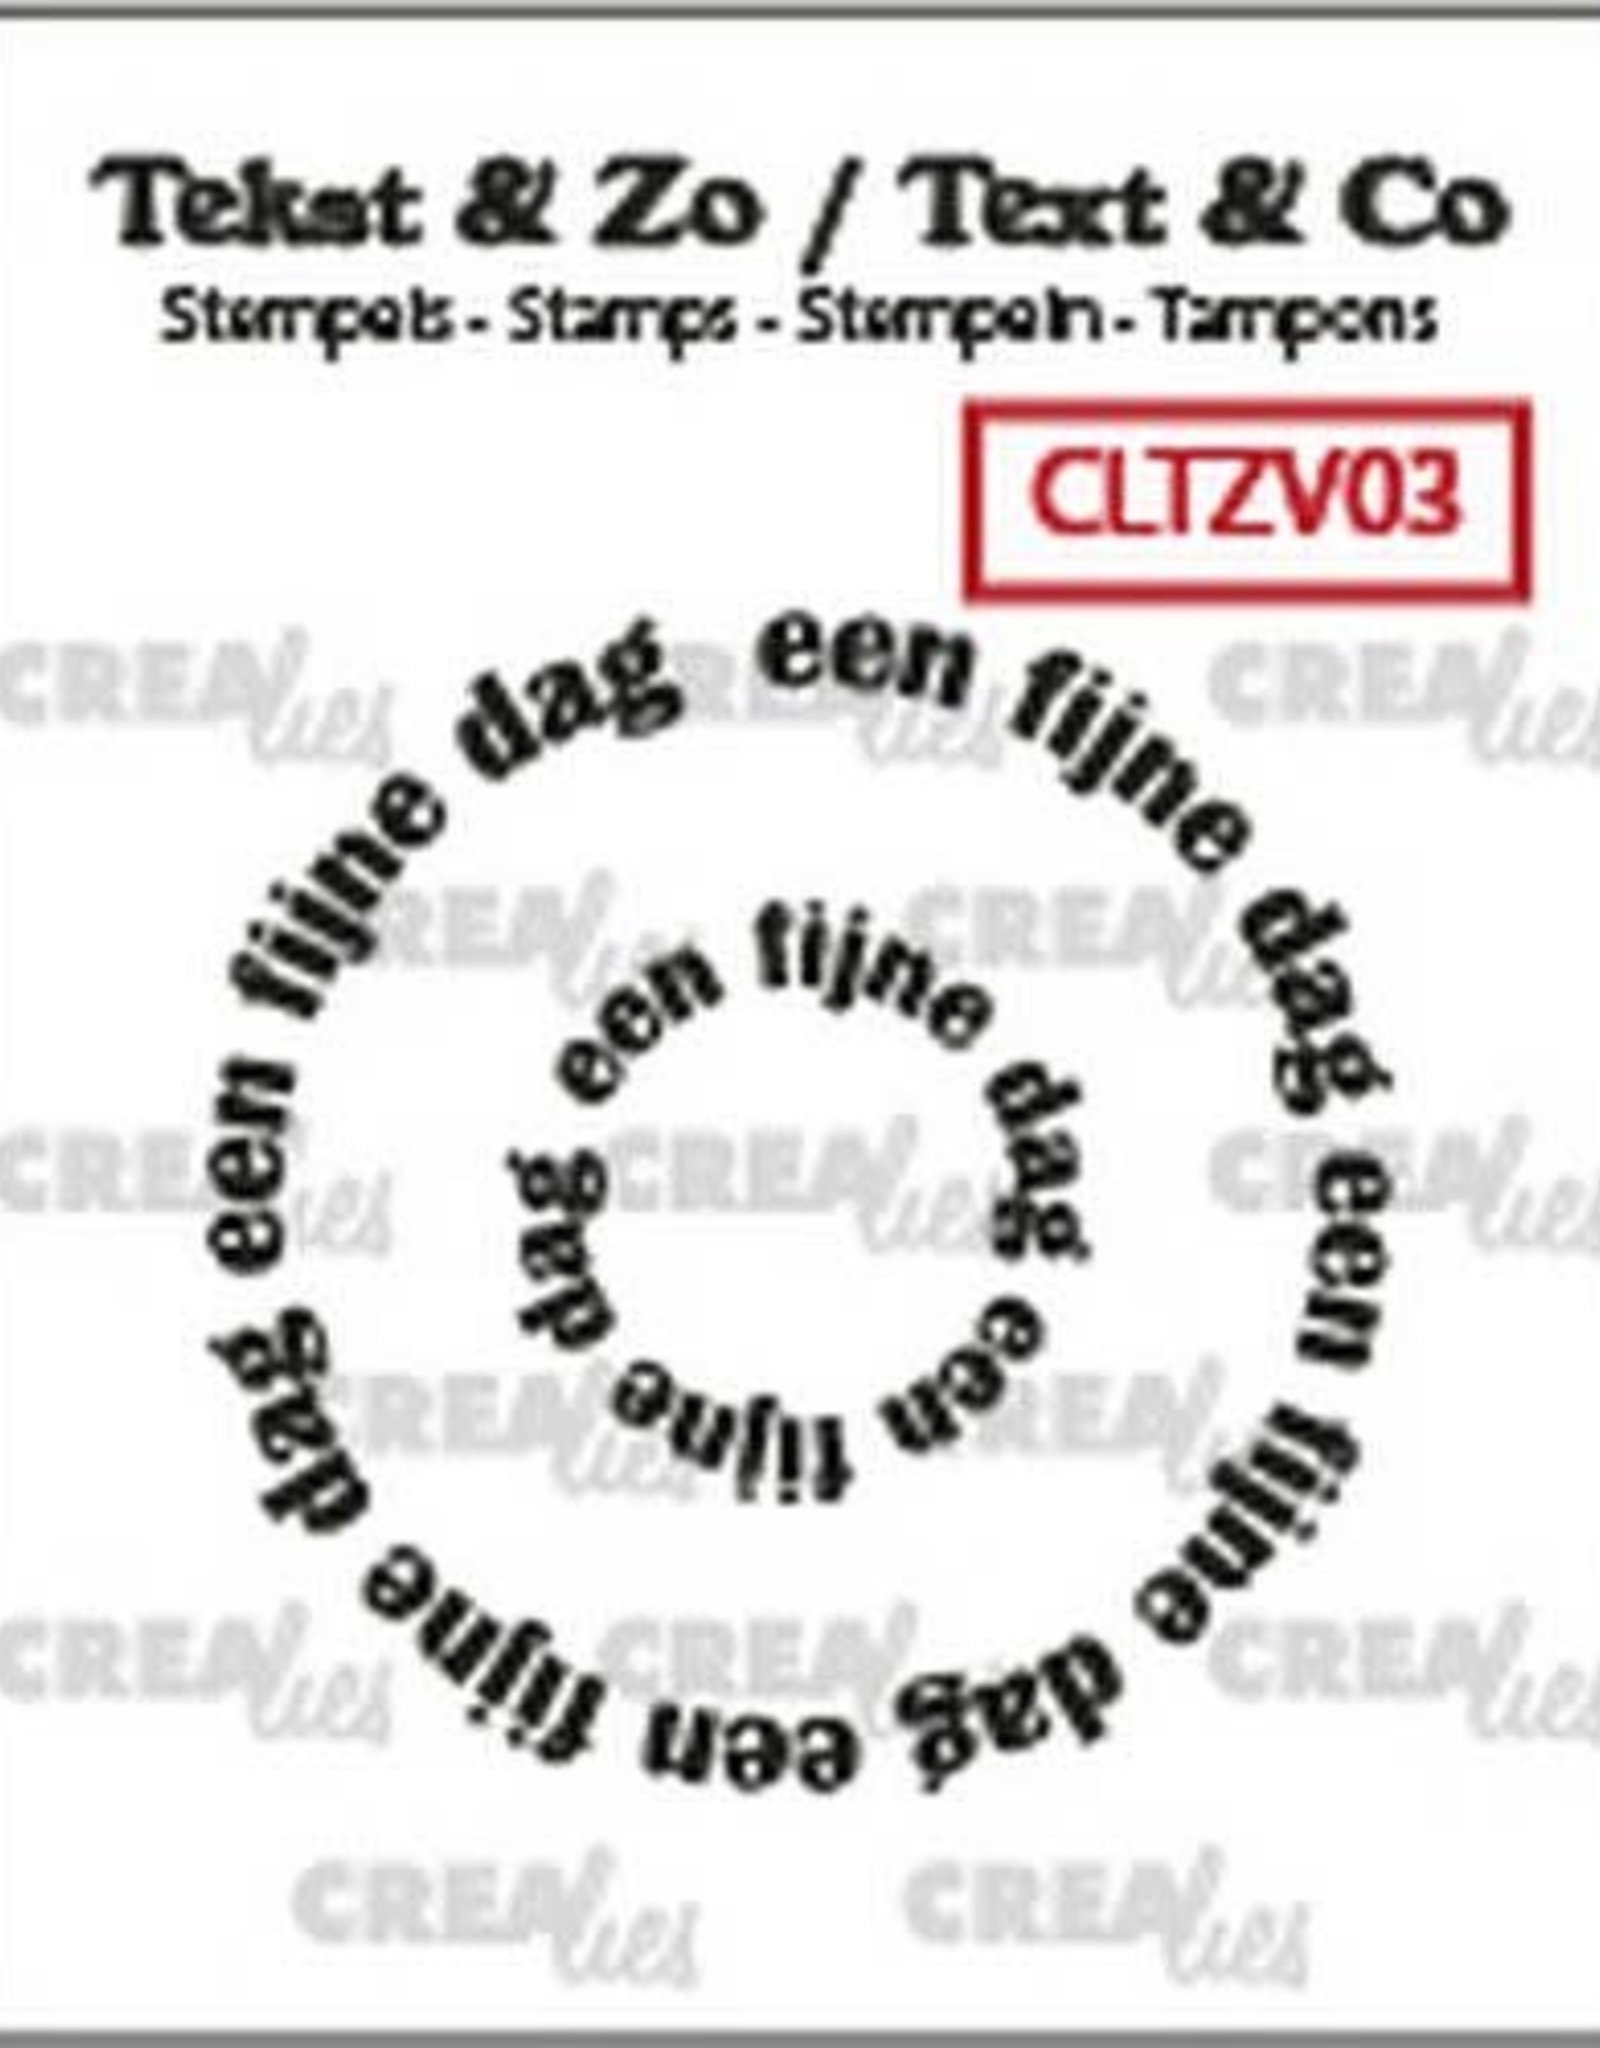 Crealies Crealies Clearstamp Tekst & Zo Rond: een fijne dag (NL) CLTZV03 20+39 mm